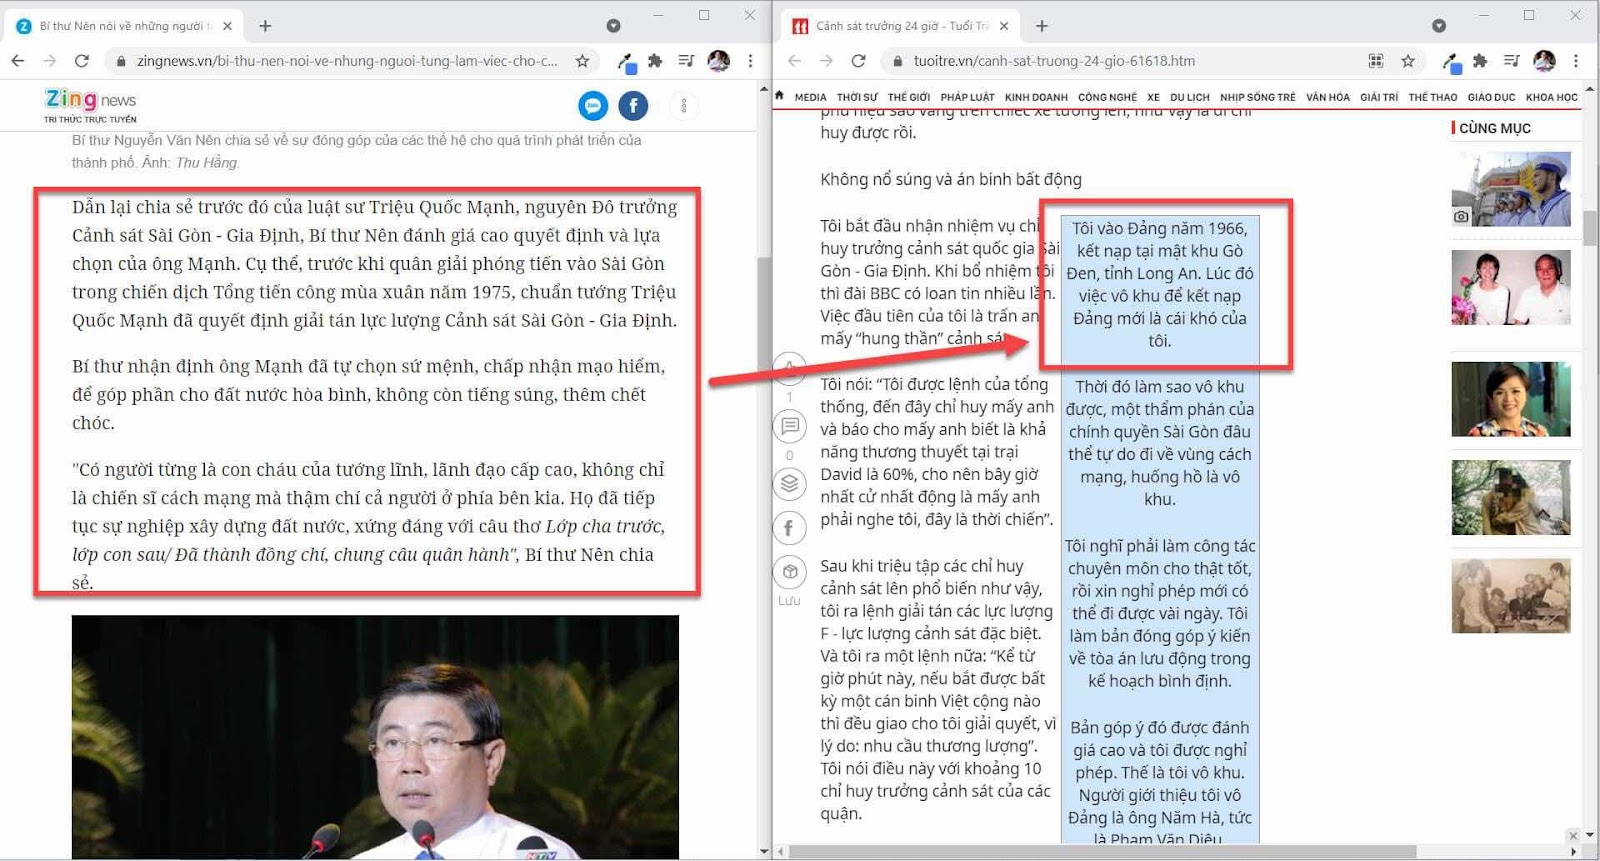 Nhơn ngày 30 tháng 4 bàn về việc Bí thư TPHCM Nguyễn Văn Nên chọn lầm ông "Việt gian" Triệu Quốc Mạnh là người đại diện chế độ VNCH xưa